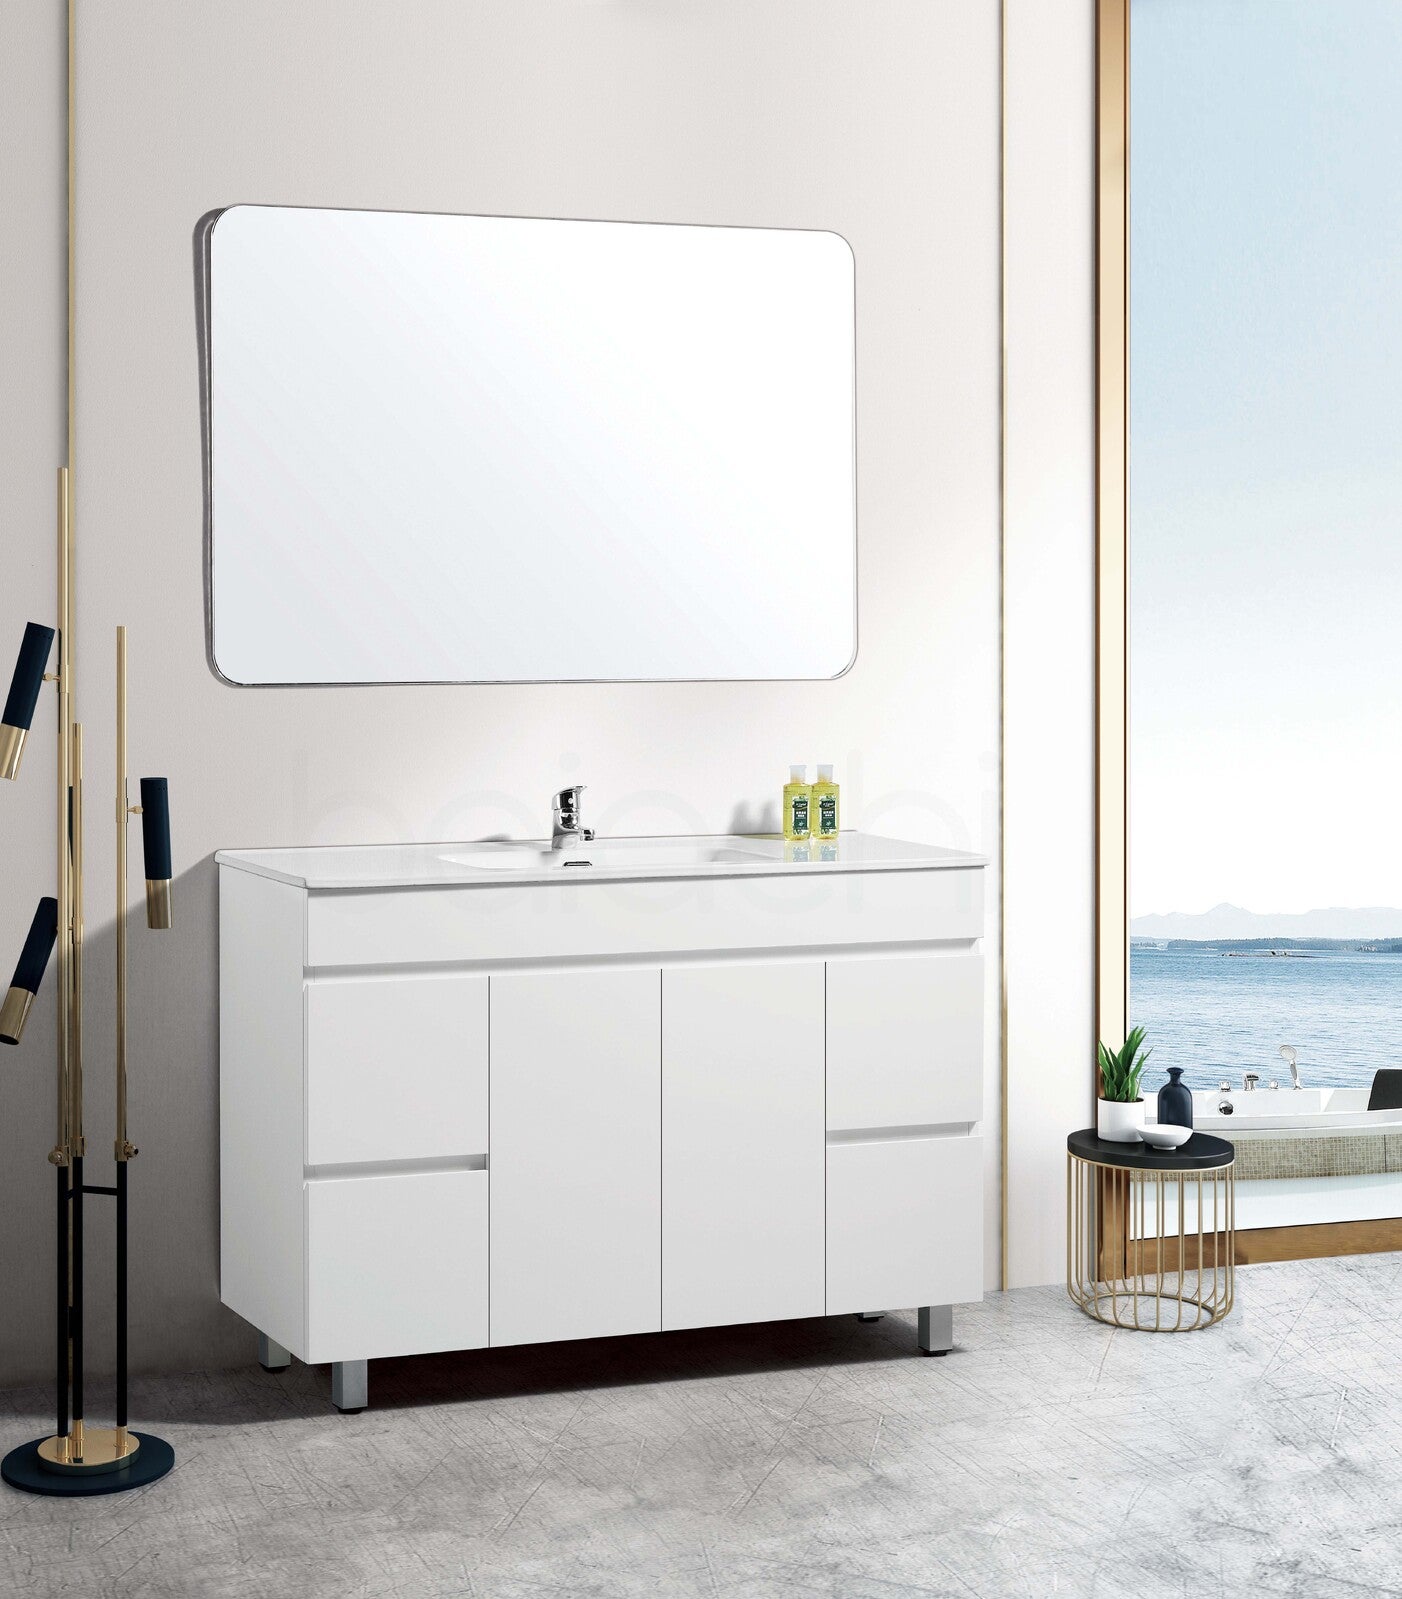 Free Mixer & Plugwaste Package Deal Windsor 1200mm Bathroom Vanity Wash Basin